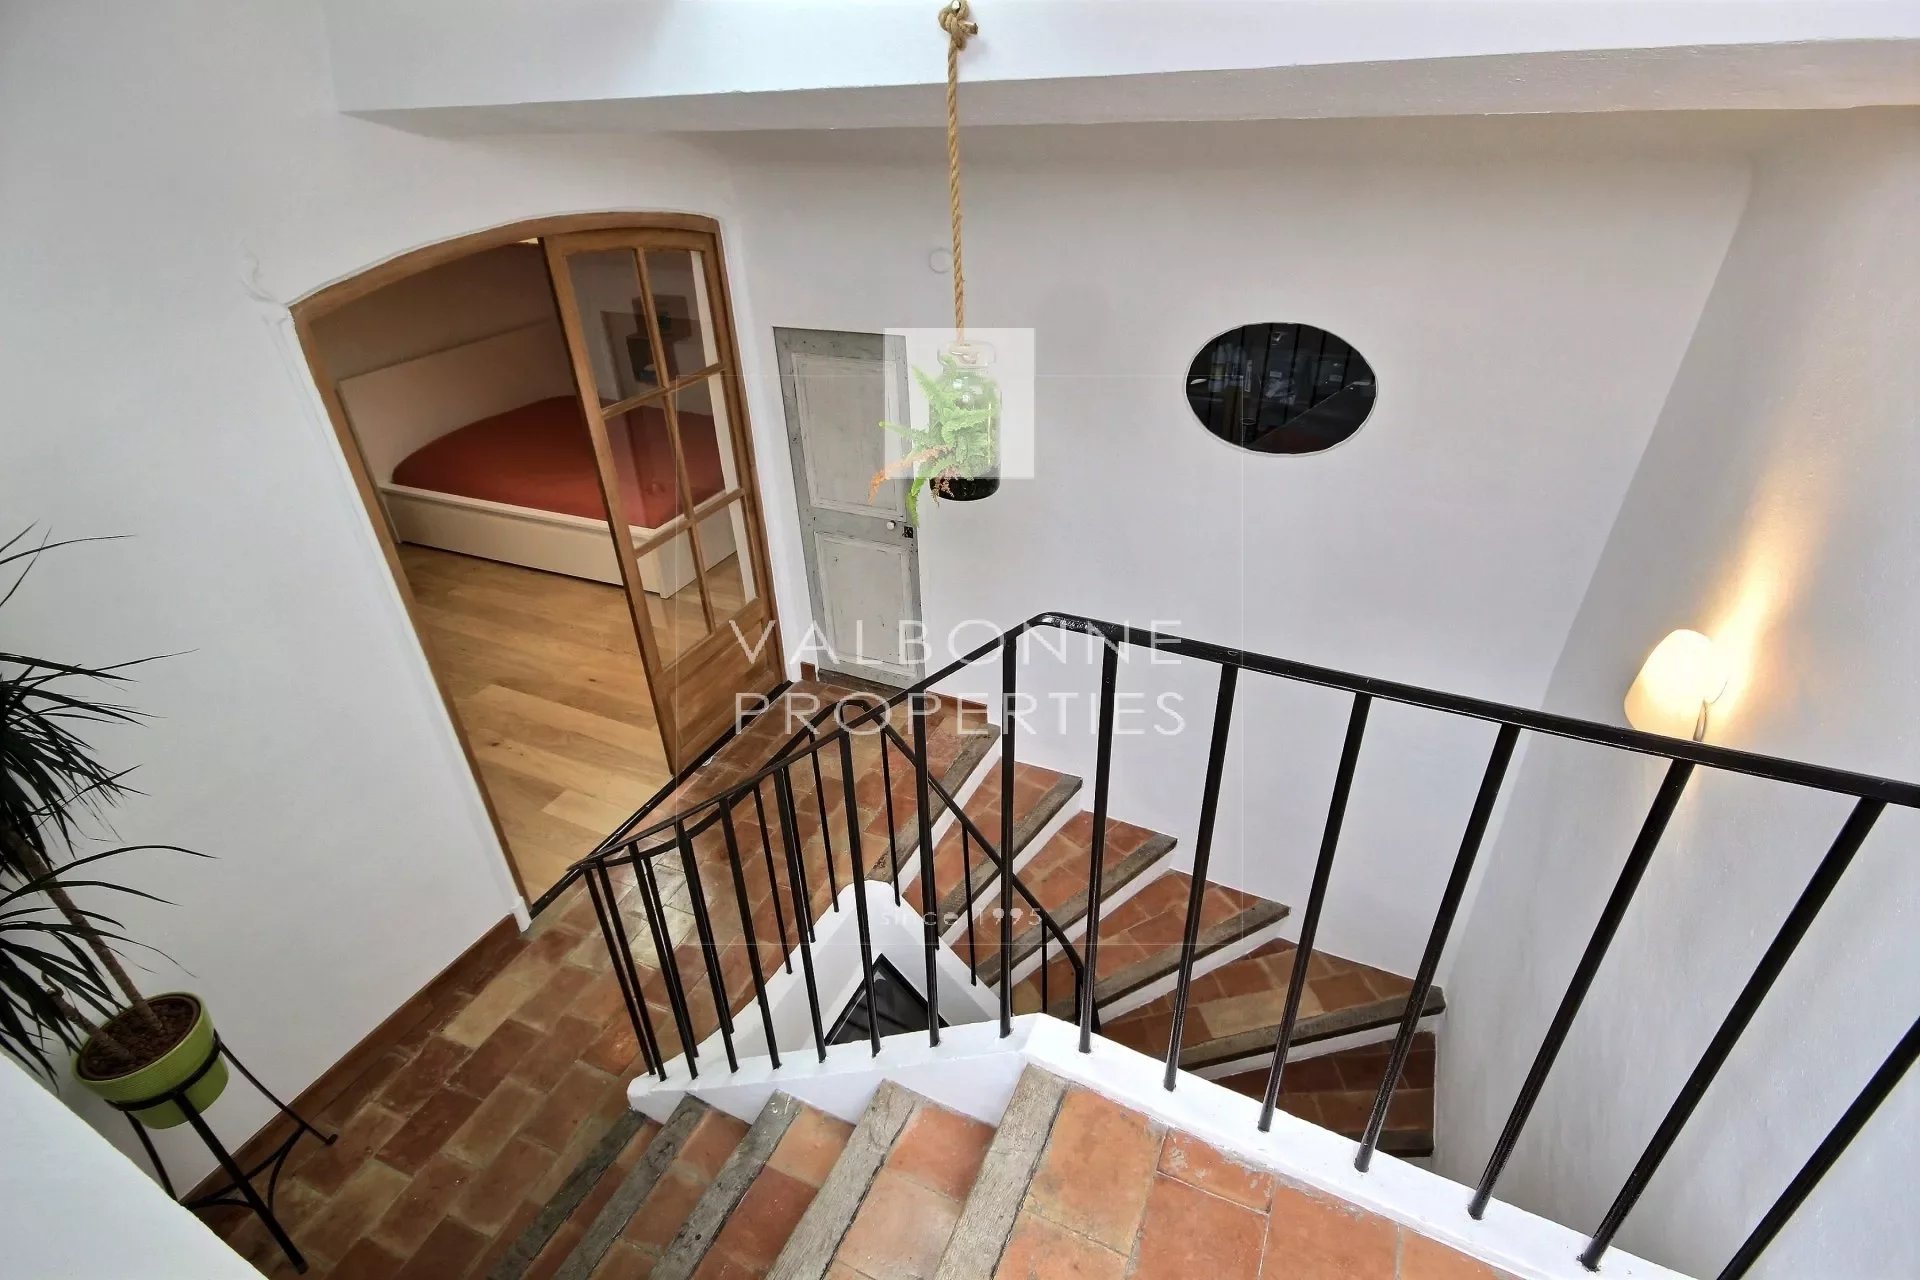 Stair Wooden floor